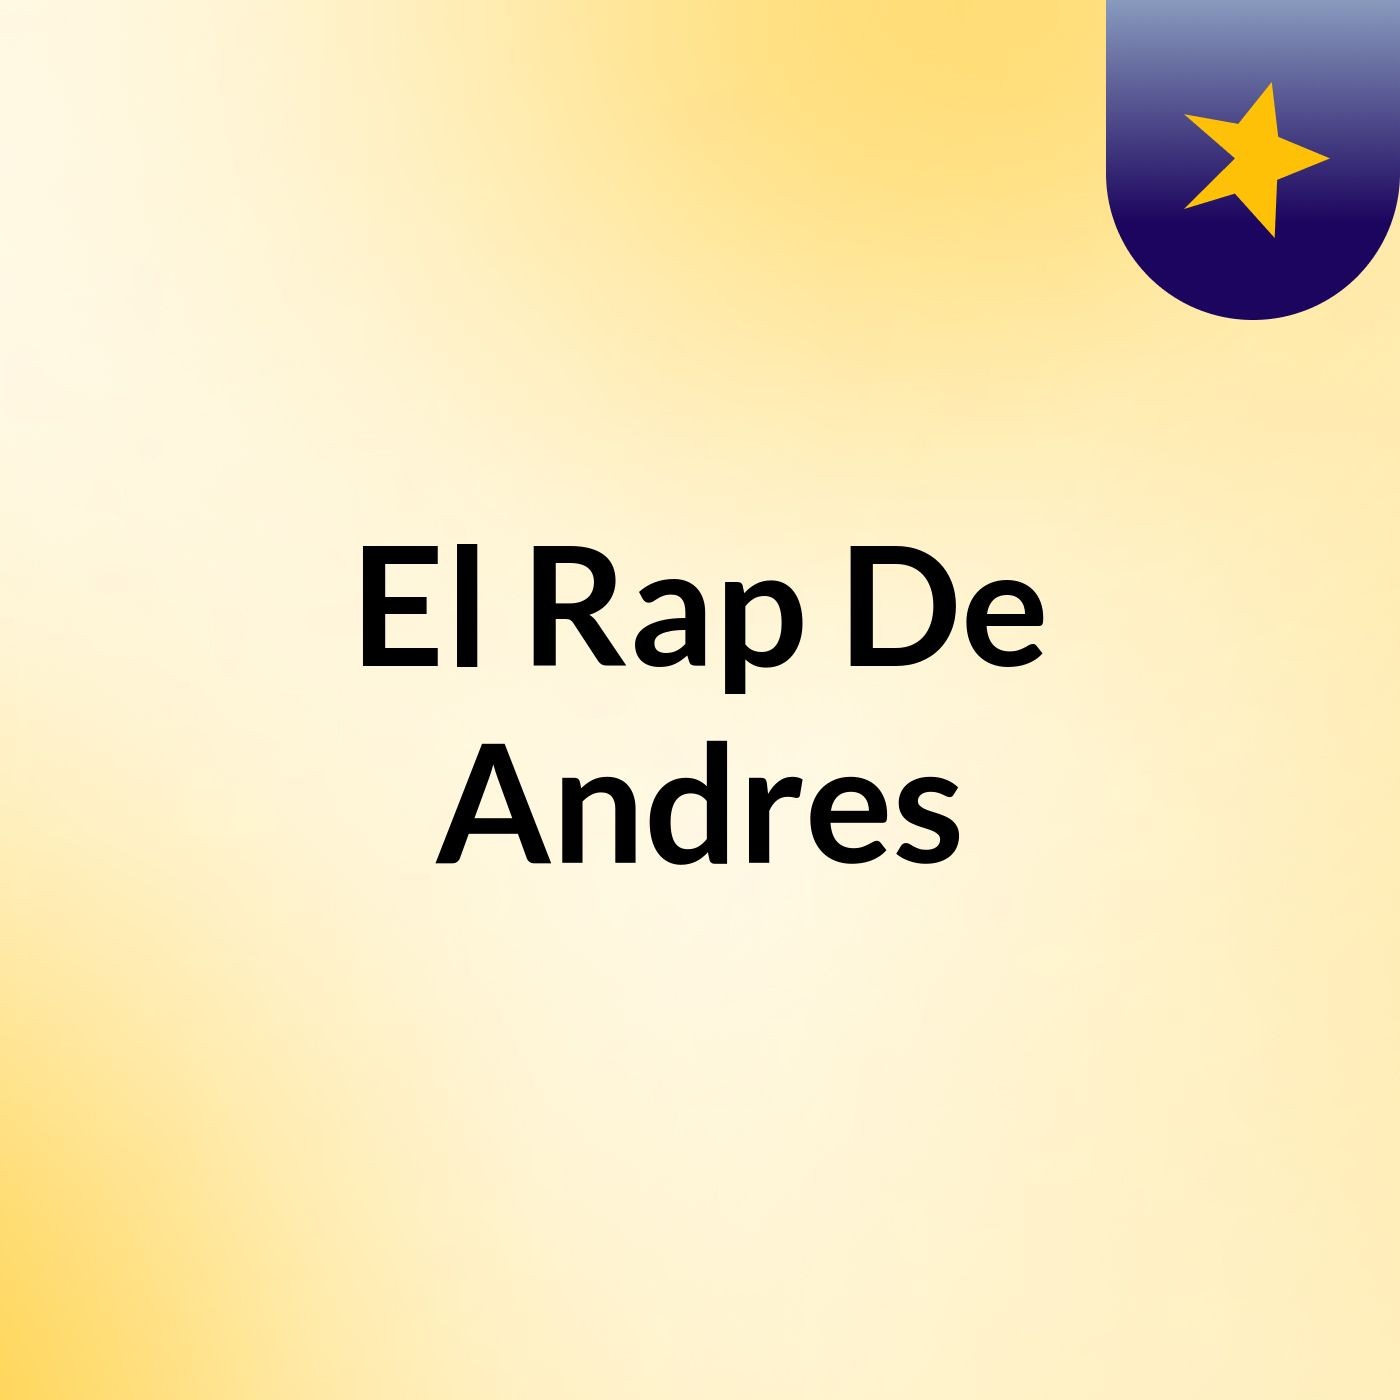 El Rap De Andres